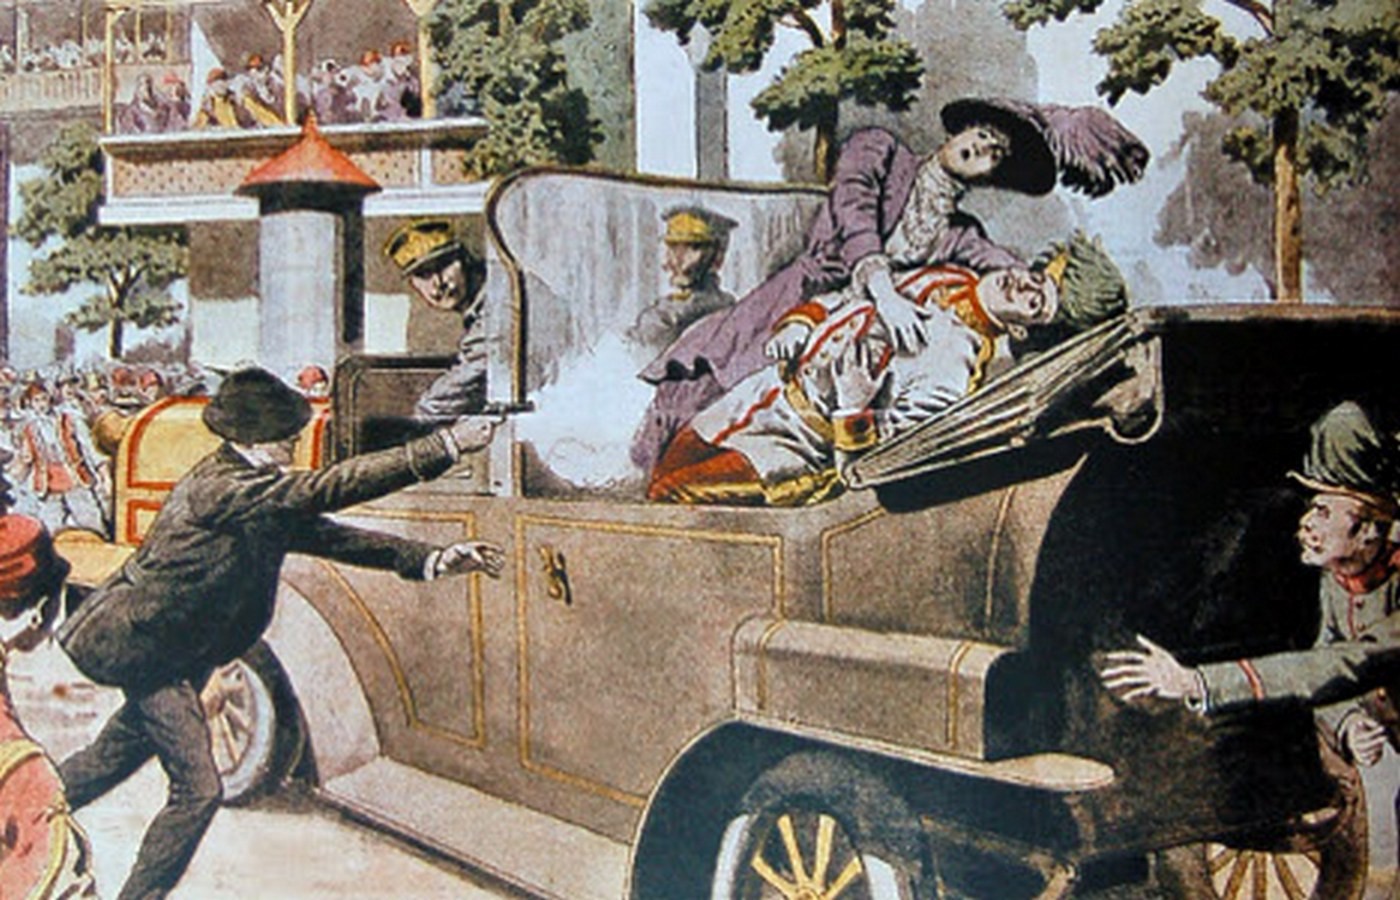 Атентат на аустријског престолонаследника Франца Фердинанда (1863-1914) и његову супругу Софију (1868-1914) 28. јуна 1914. Илустрација из француског листа Le Petit Journal, 12. јул 1914.